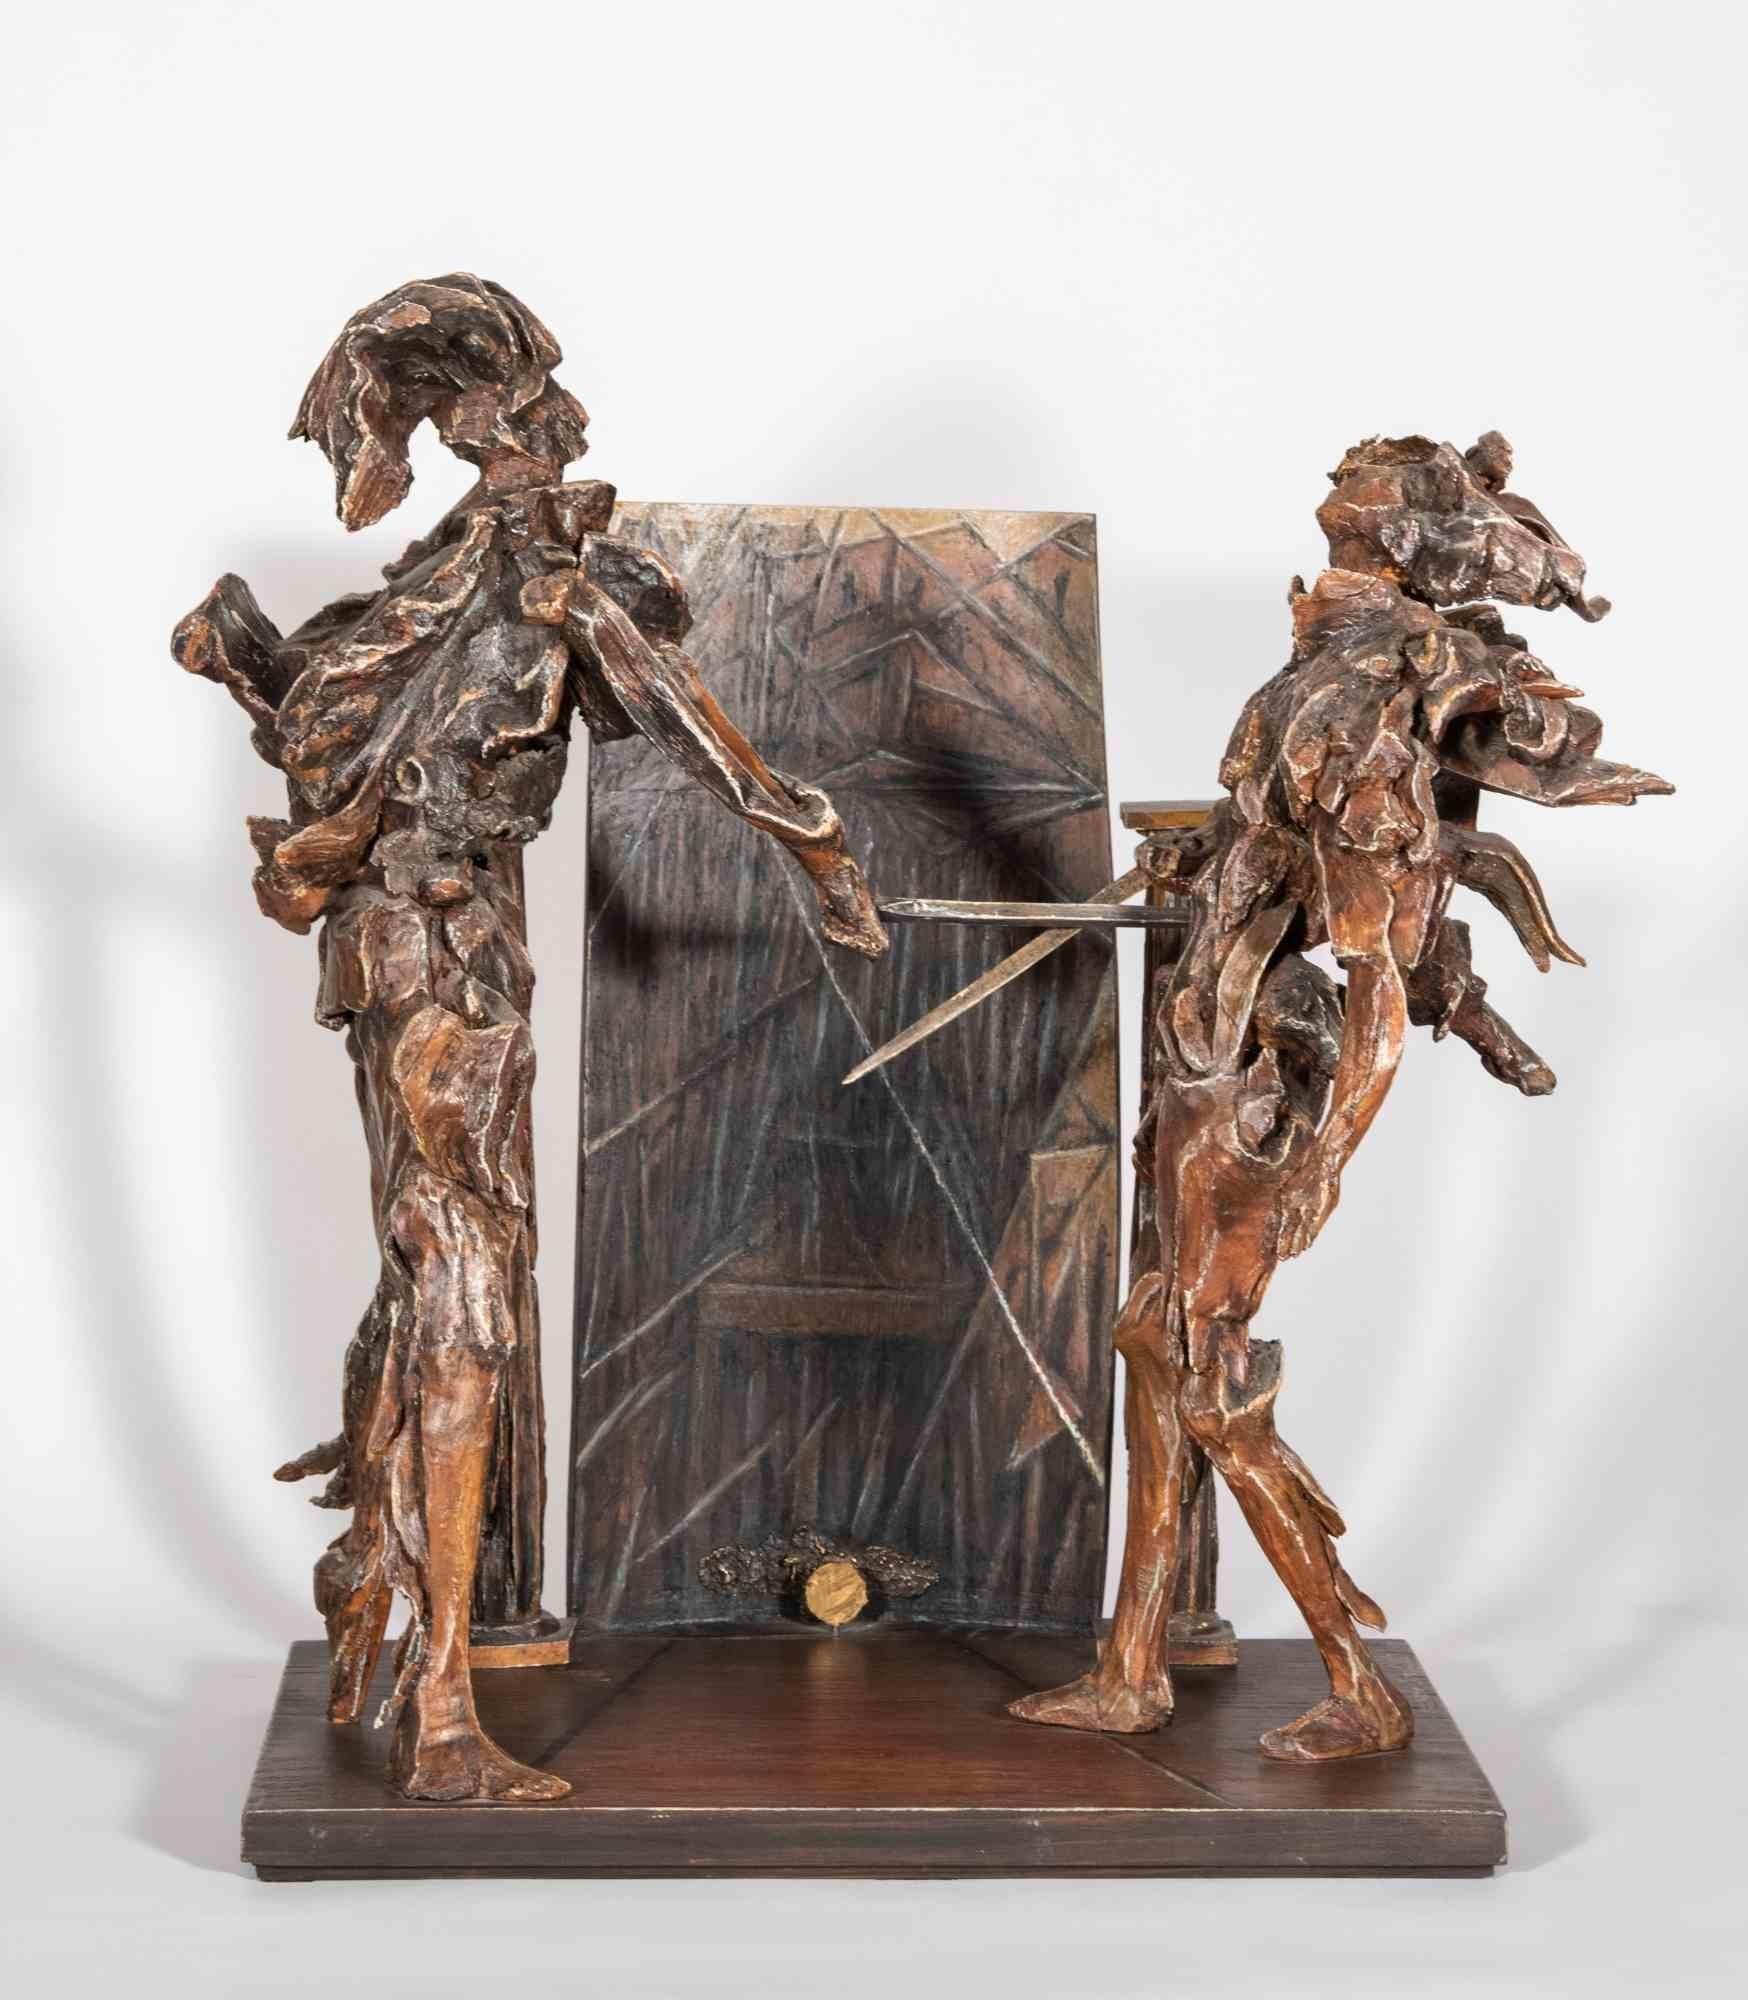 Ergreifende Skulptur, in ausgezeichnetem Zustand, geschaffen aus handbemaltem Holz mit kleinem Bronzeeinsatz, vom Bildhauer Lorenzo Servalli, um im Jahr 1998 die Lehre der Vergebung zu erzählen, durch die bewegende Novelle von Tancred und Clorinda,